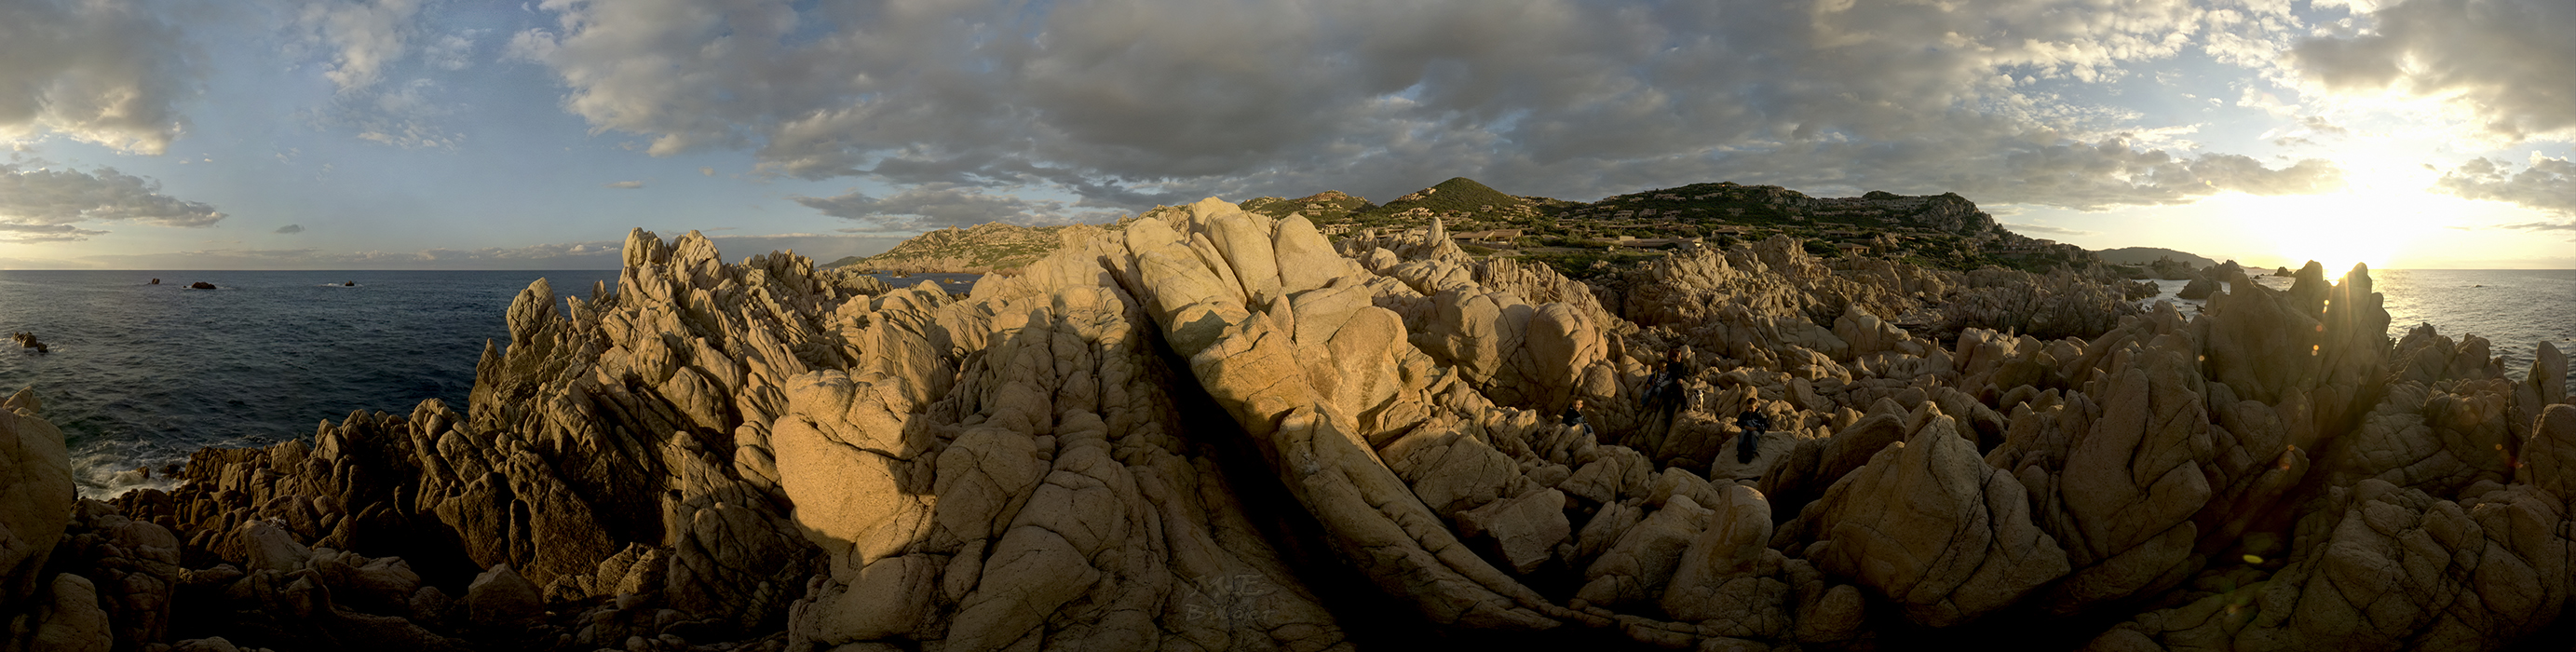 360° Costa Paradiso auf Sardinen - aus 48 Einzelaufnahmen